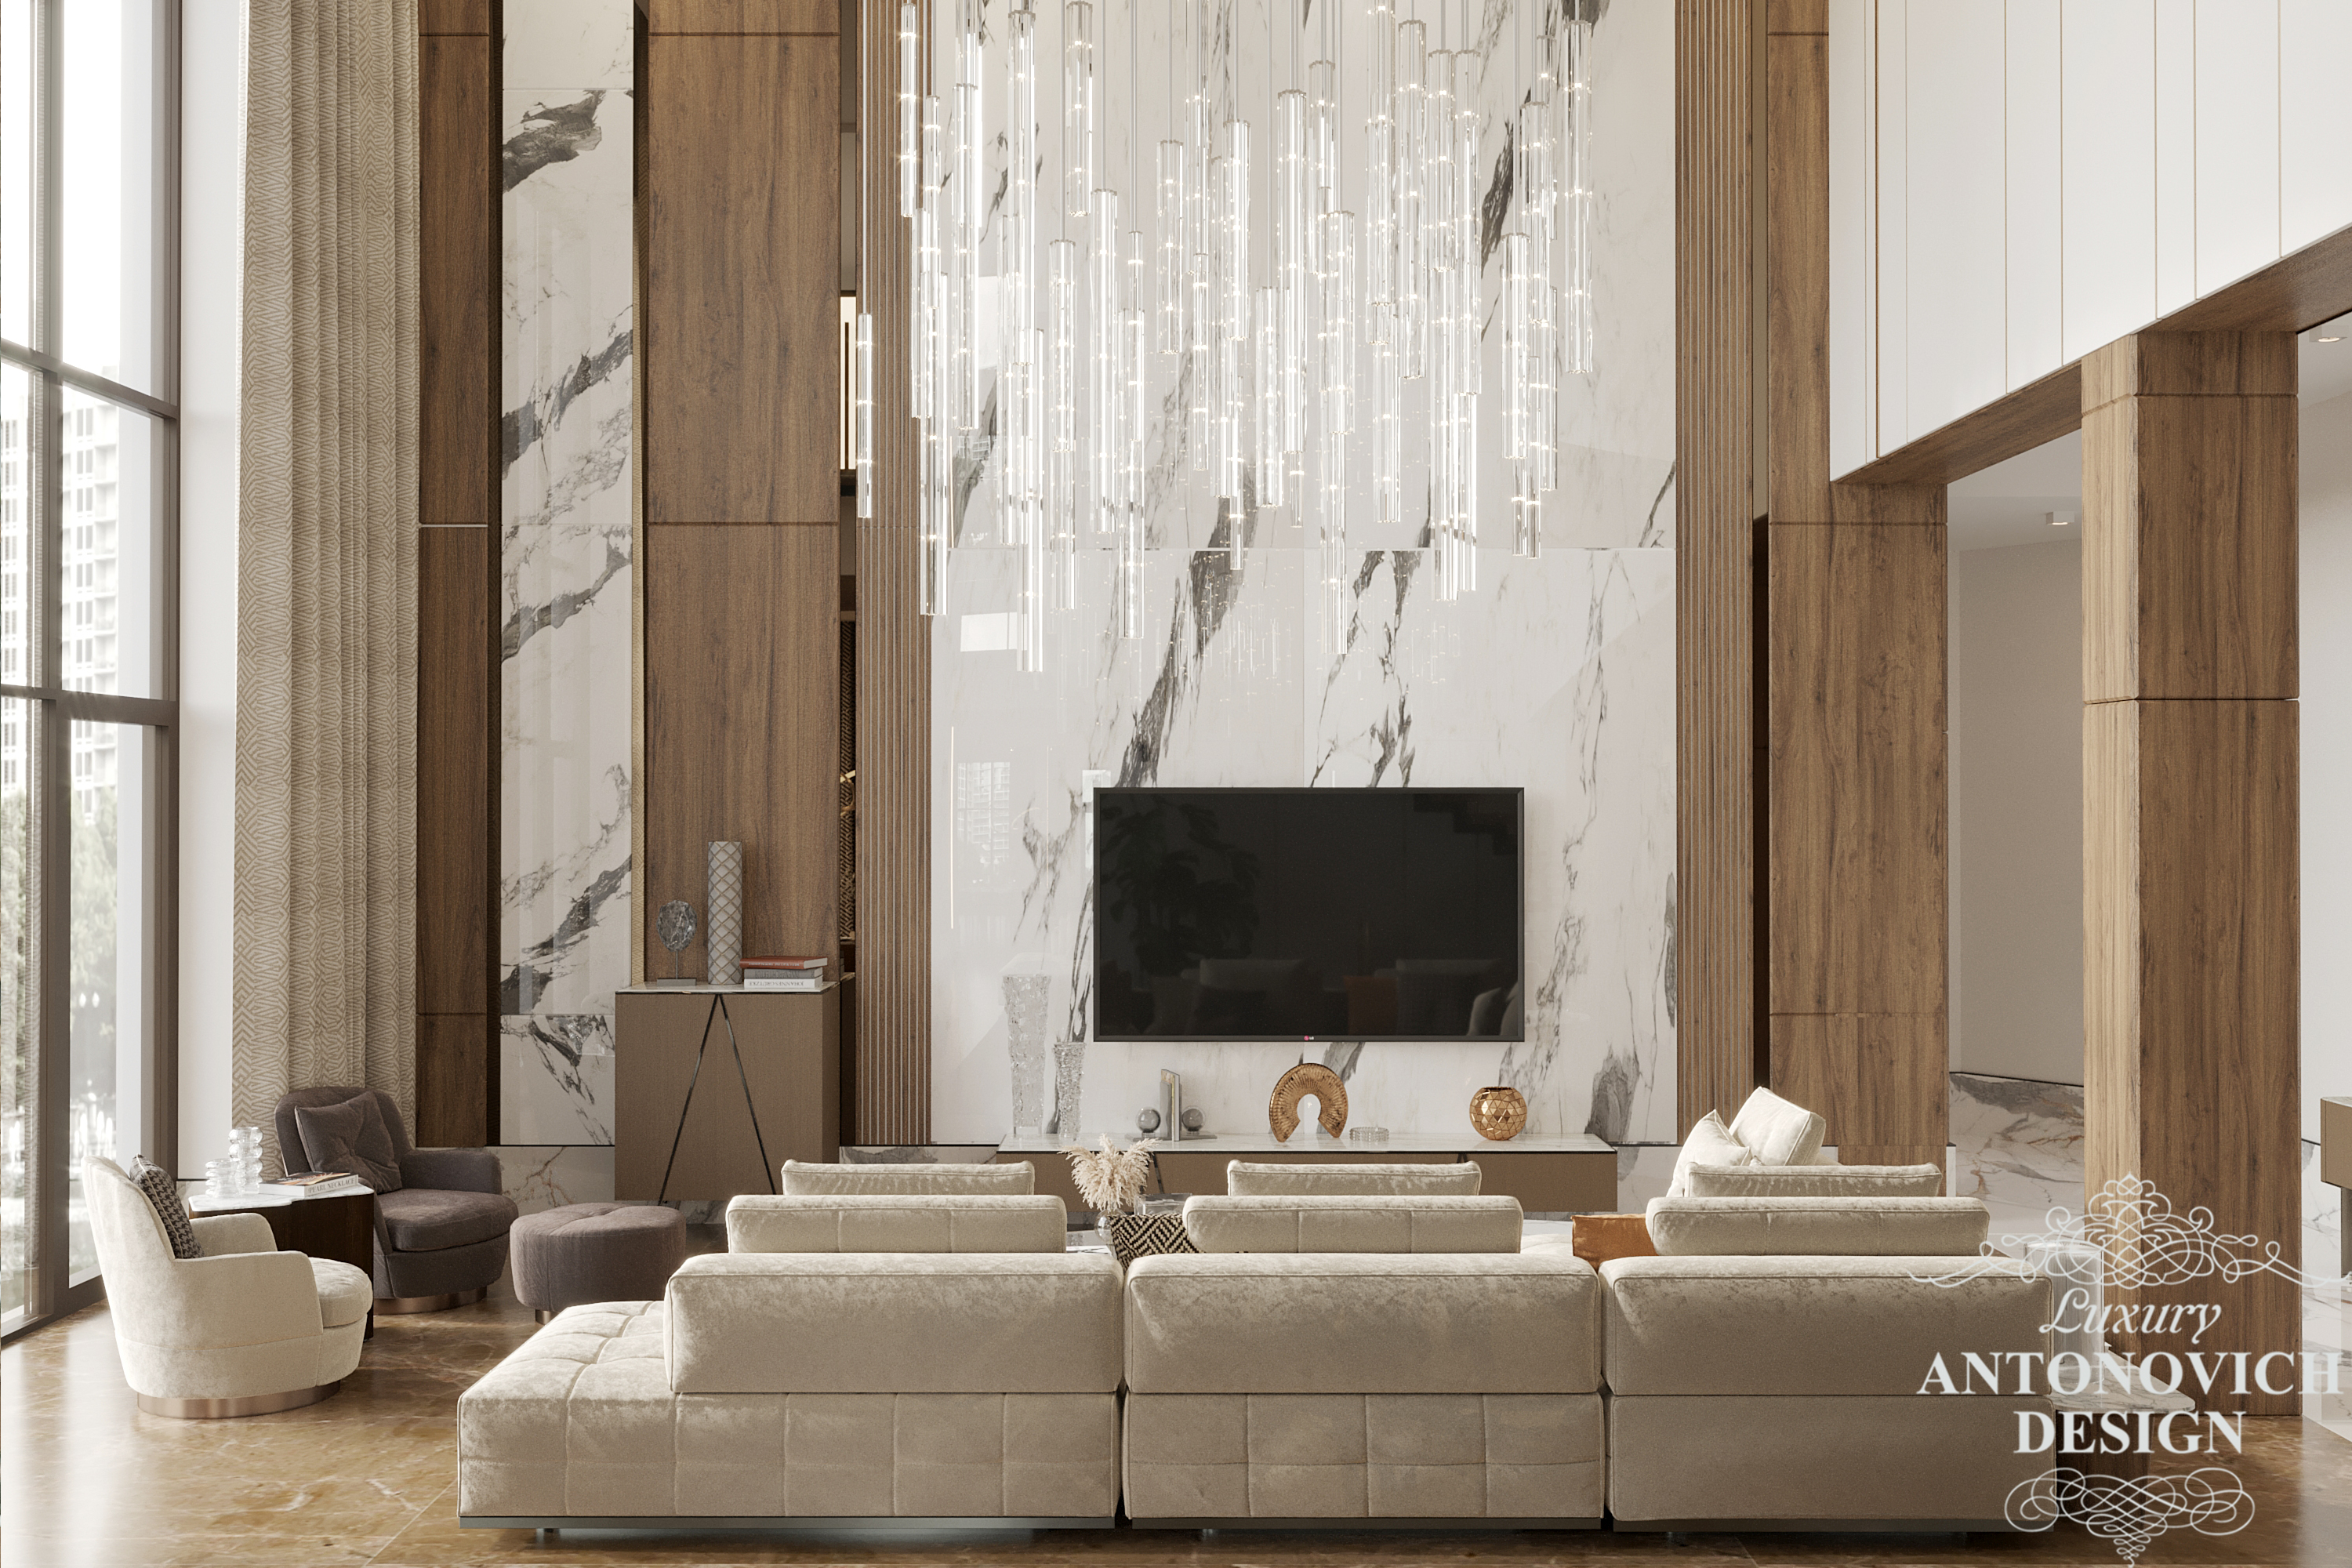 мрамор, мраморная стеновая панель в ТВ-зоне, натуральное дерево, экологичные материал премиального качества, итальянская элитная мебель в дизайне бизнес апартаментов. Современный дизайн квартиры.